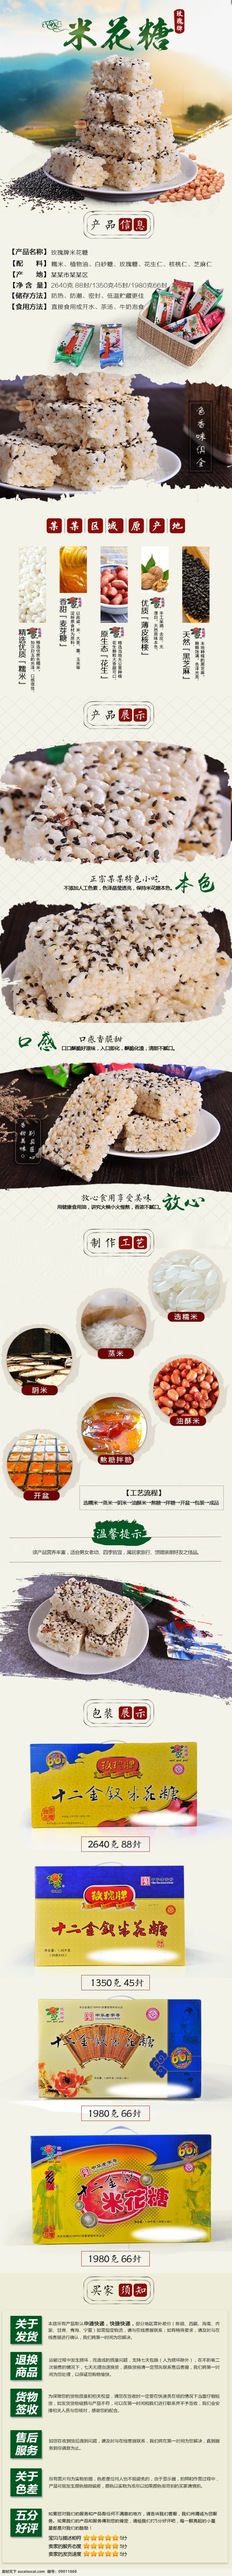 米 花 糖 详情 模板 米花糖 香甜可口 酥脆美味 家乡的特产 小时候的味道 礼盒装米花糖